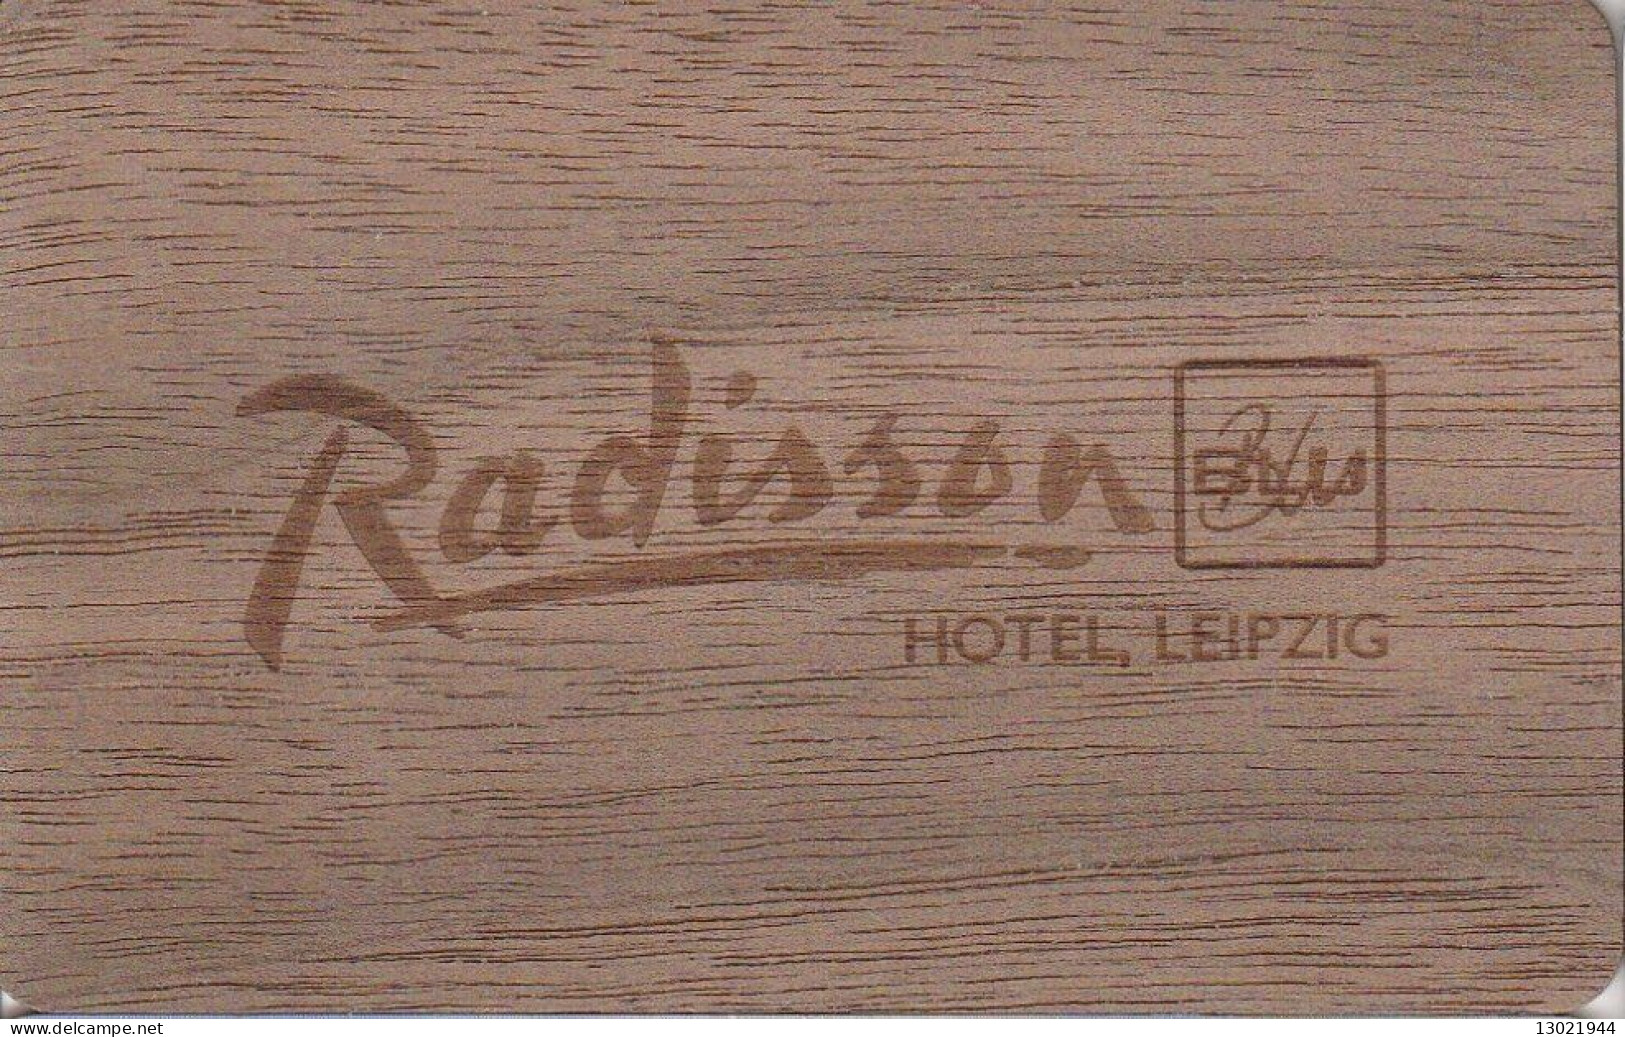 GERMANIA  KEY HOTEL  Radisson BLU Hotel Leipzig - WOODEN CARD - Cartes D'hotel